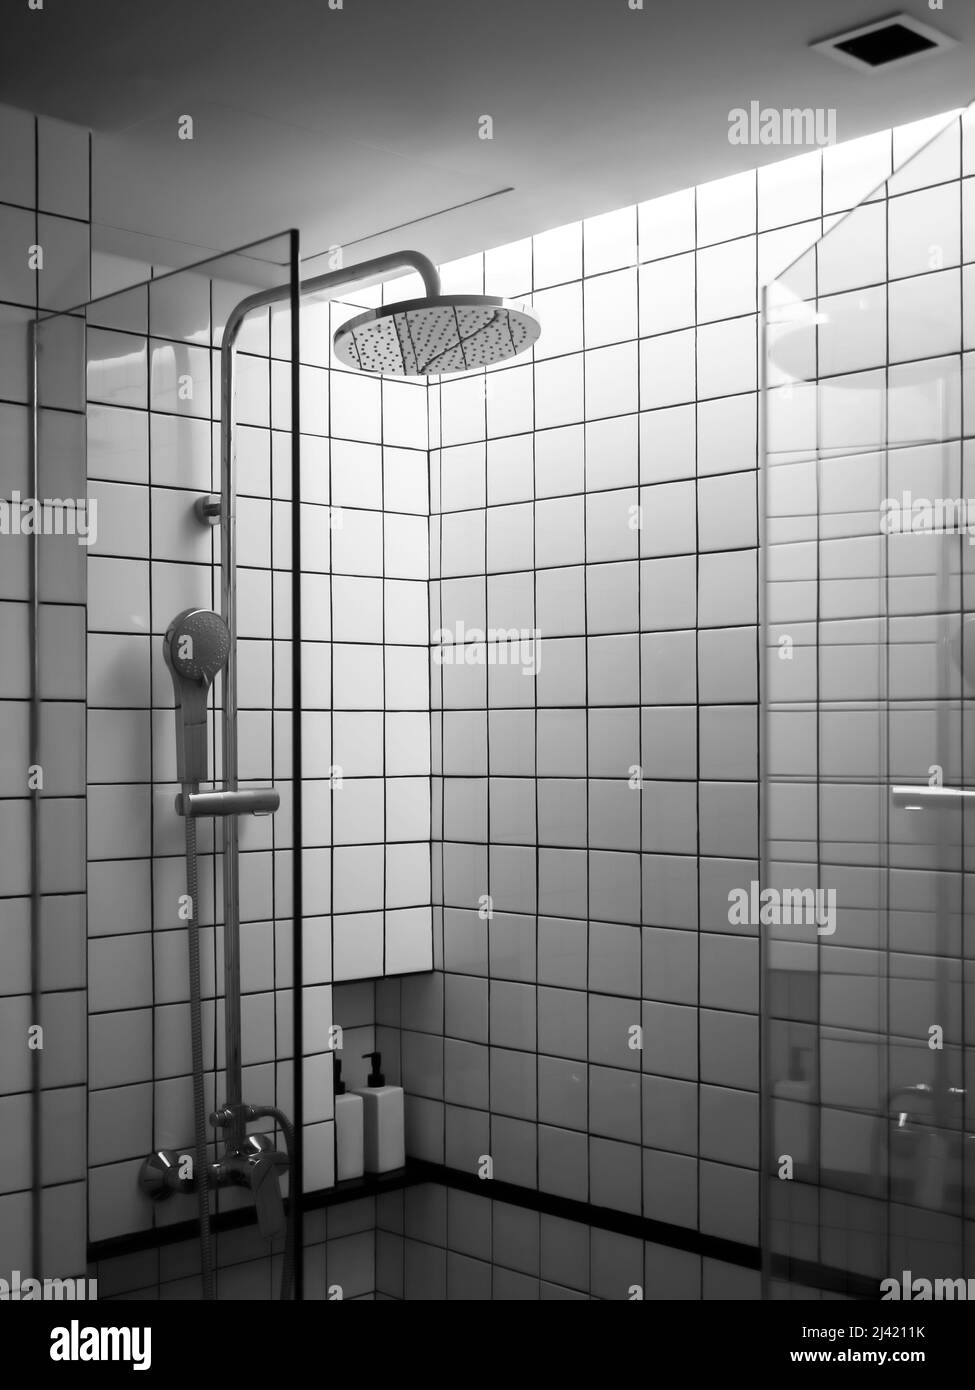 Pareti in piastrelle a griglia bianche e nere, l'interno della moderna box doccia nel bagno con doccia a pioggia in vetro divisorio porta, verticali s. Foto Stock